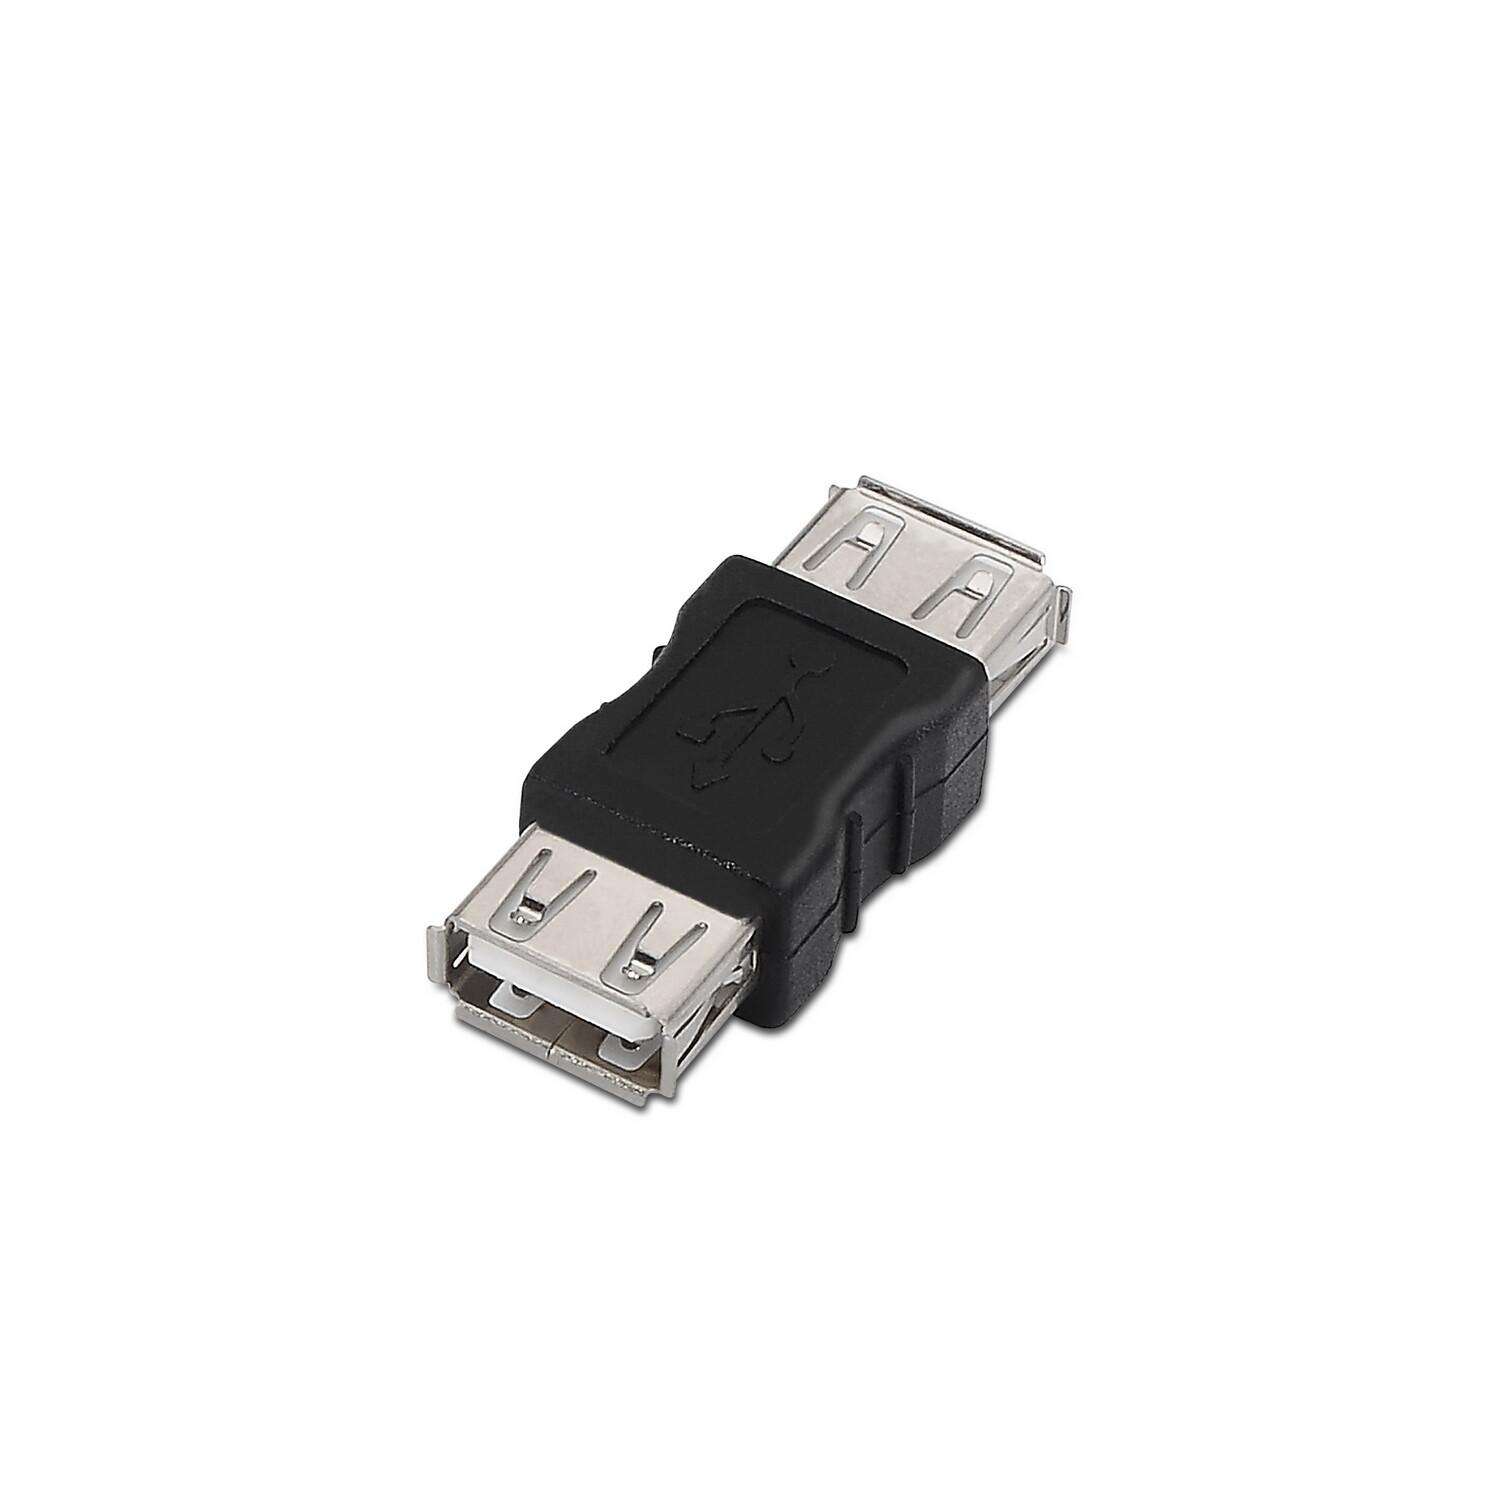 Adaptador OTG 2 en 1 Micro USB y Tipo-C a USB - Movicenter Panama